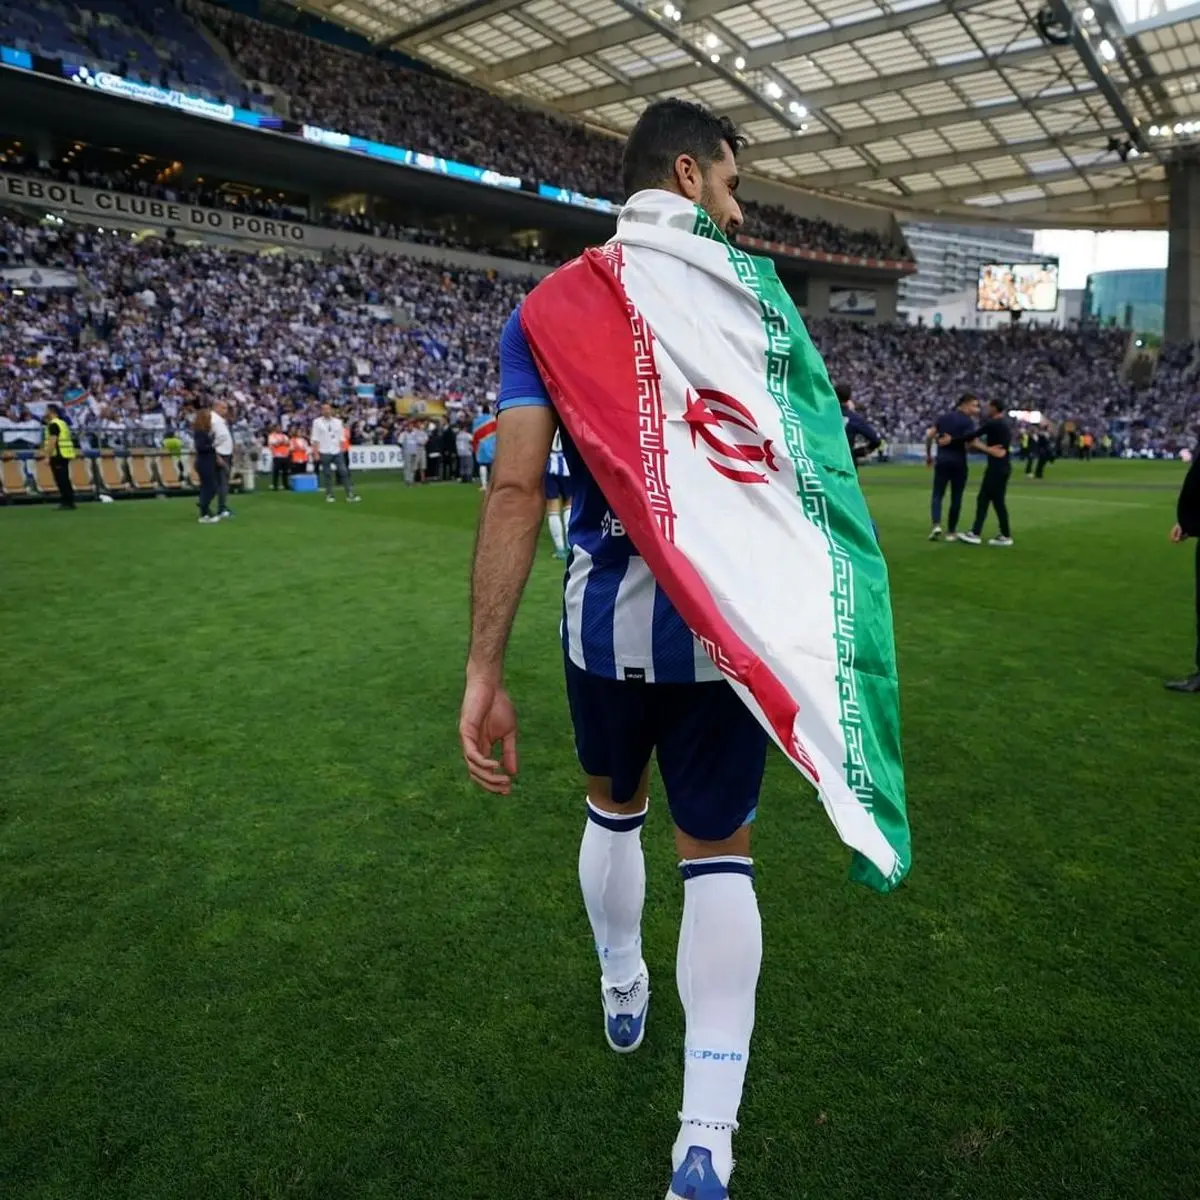  پورتو طارمی را پرچمدار ایران در جام جهانی کرد+عکس 